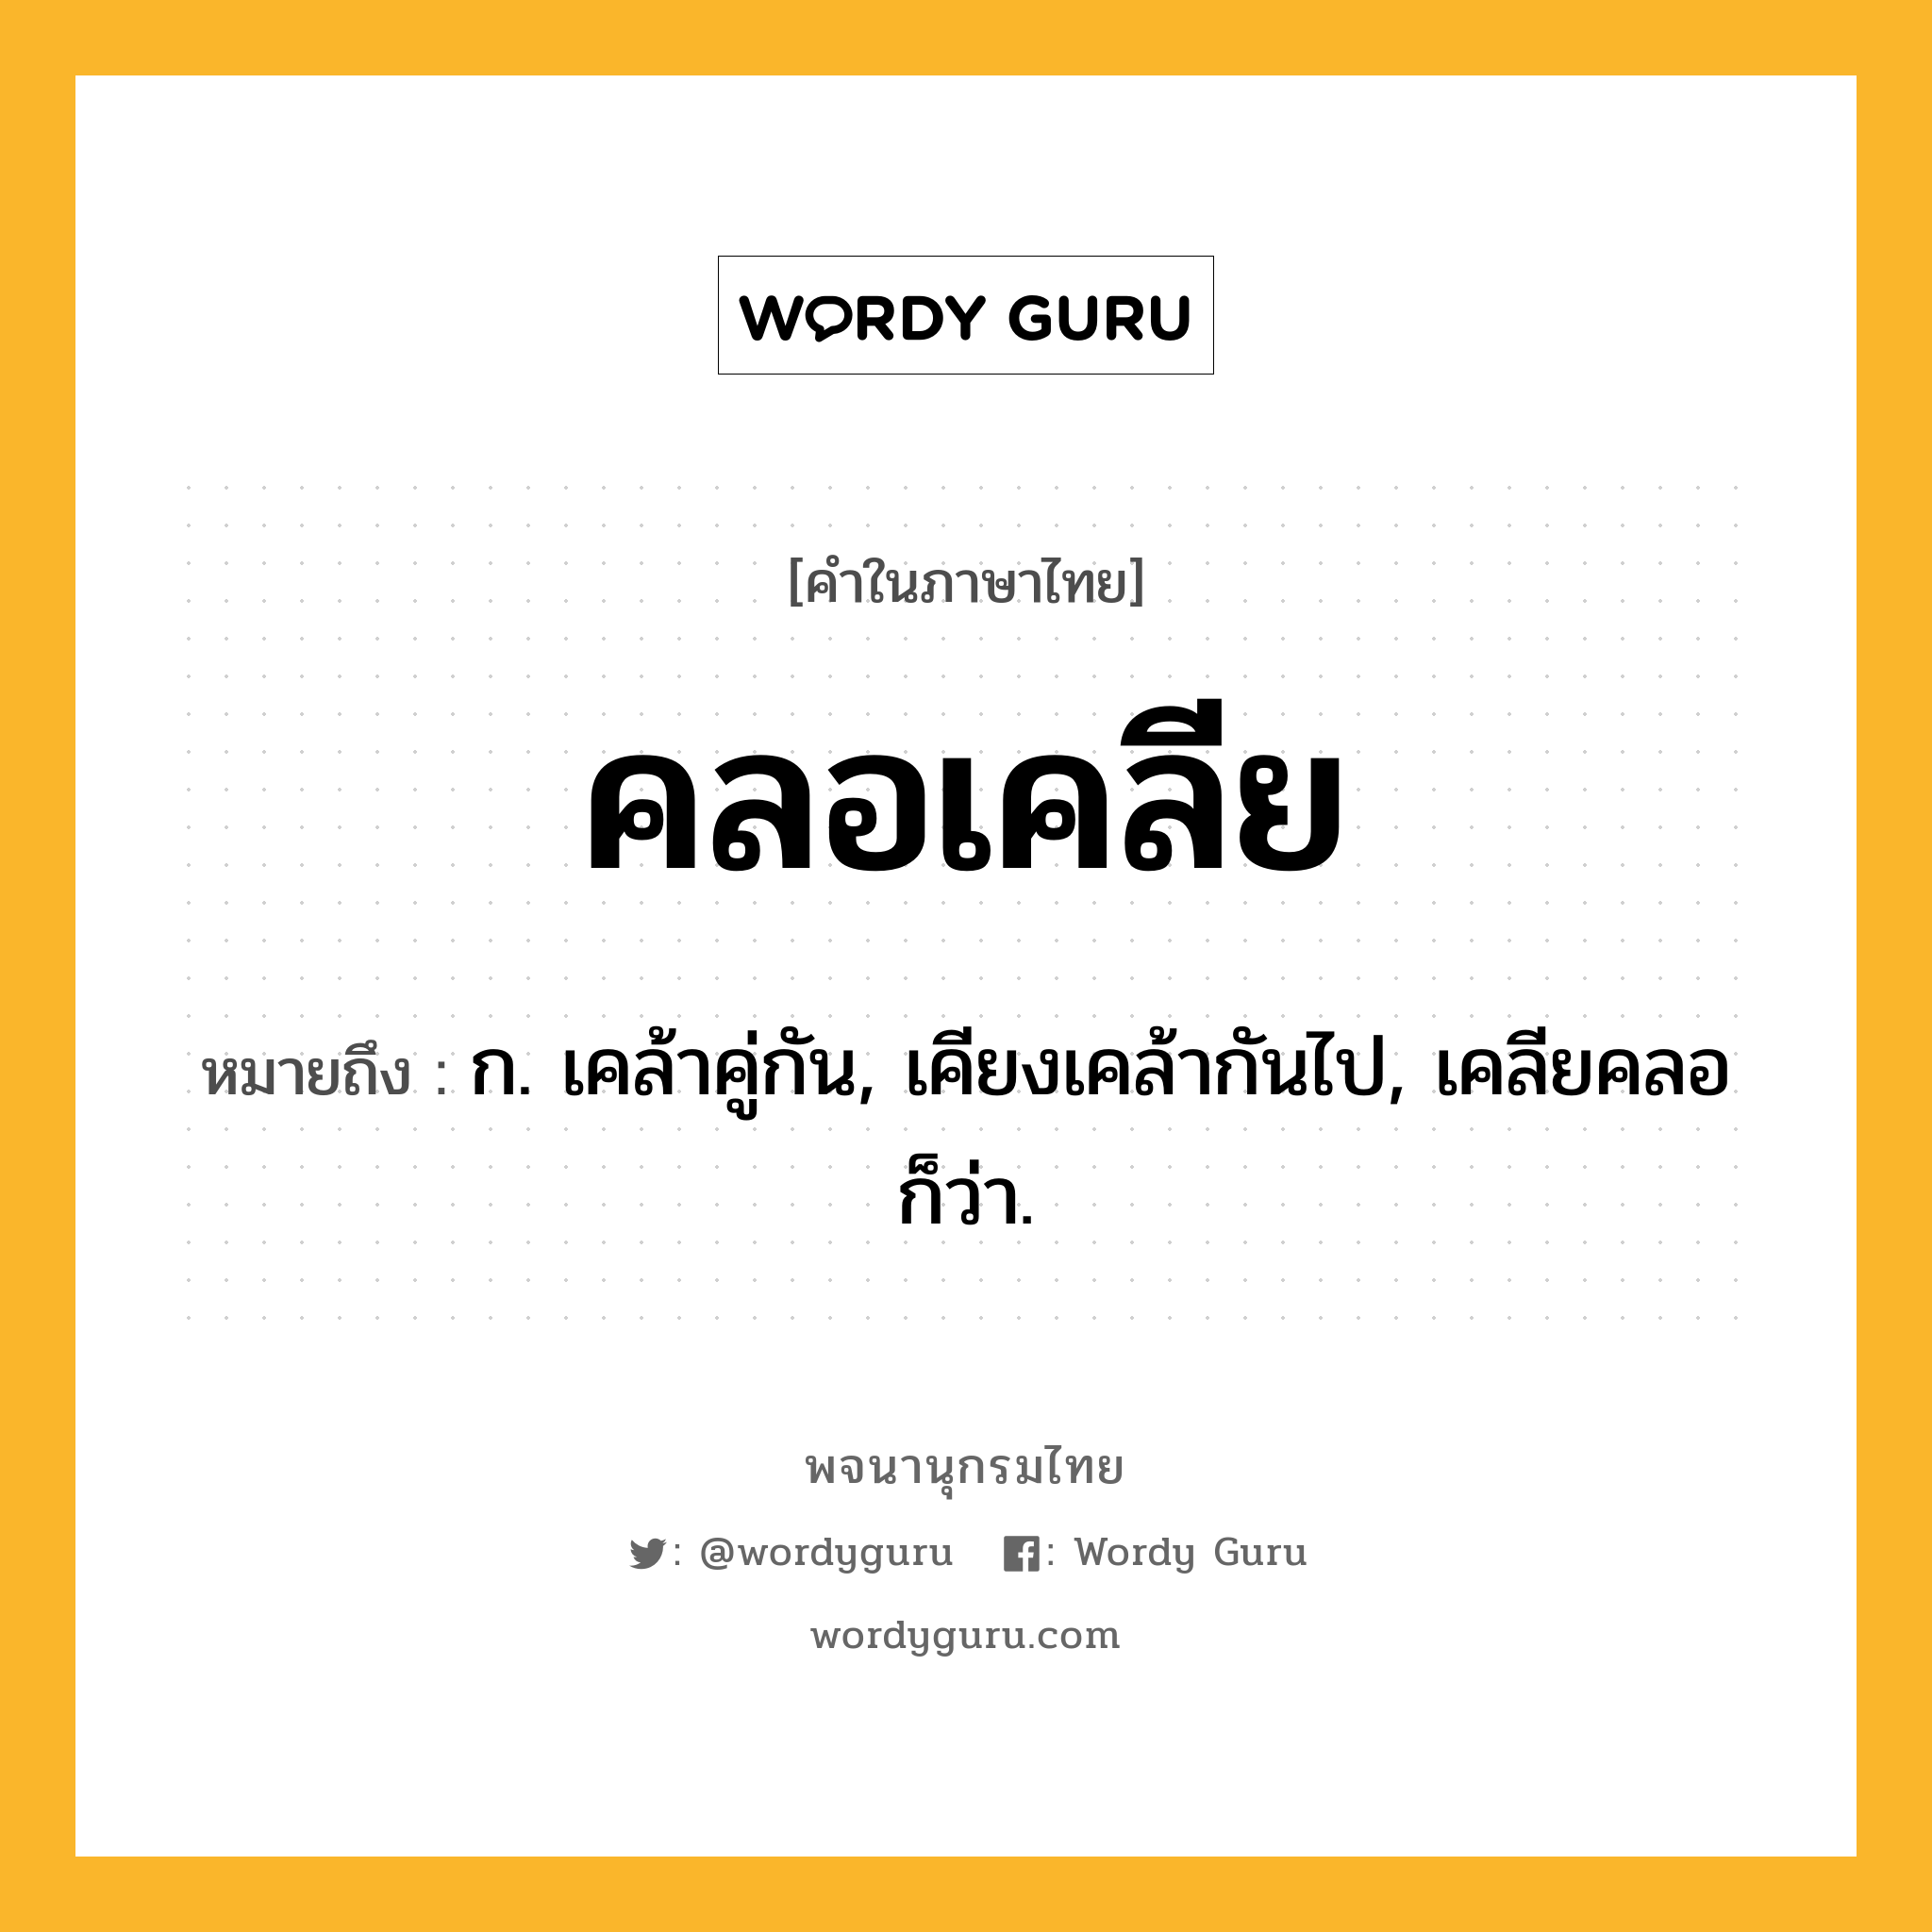 คลอเคลีย ความหมาย หมายถึงอะไร?, คำในภาษาไทย คลอเคลีย หมายถึง ก. เคล้าคู่กัน, เคียงเคล้ากันไป, เคลียคลอ ก็ว่า.